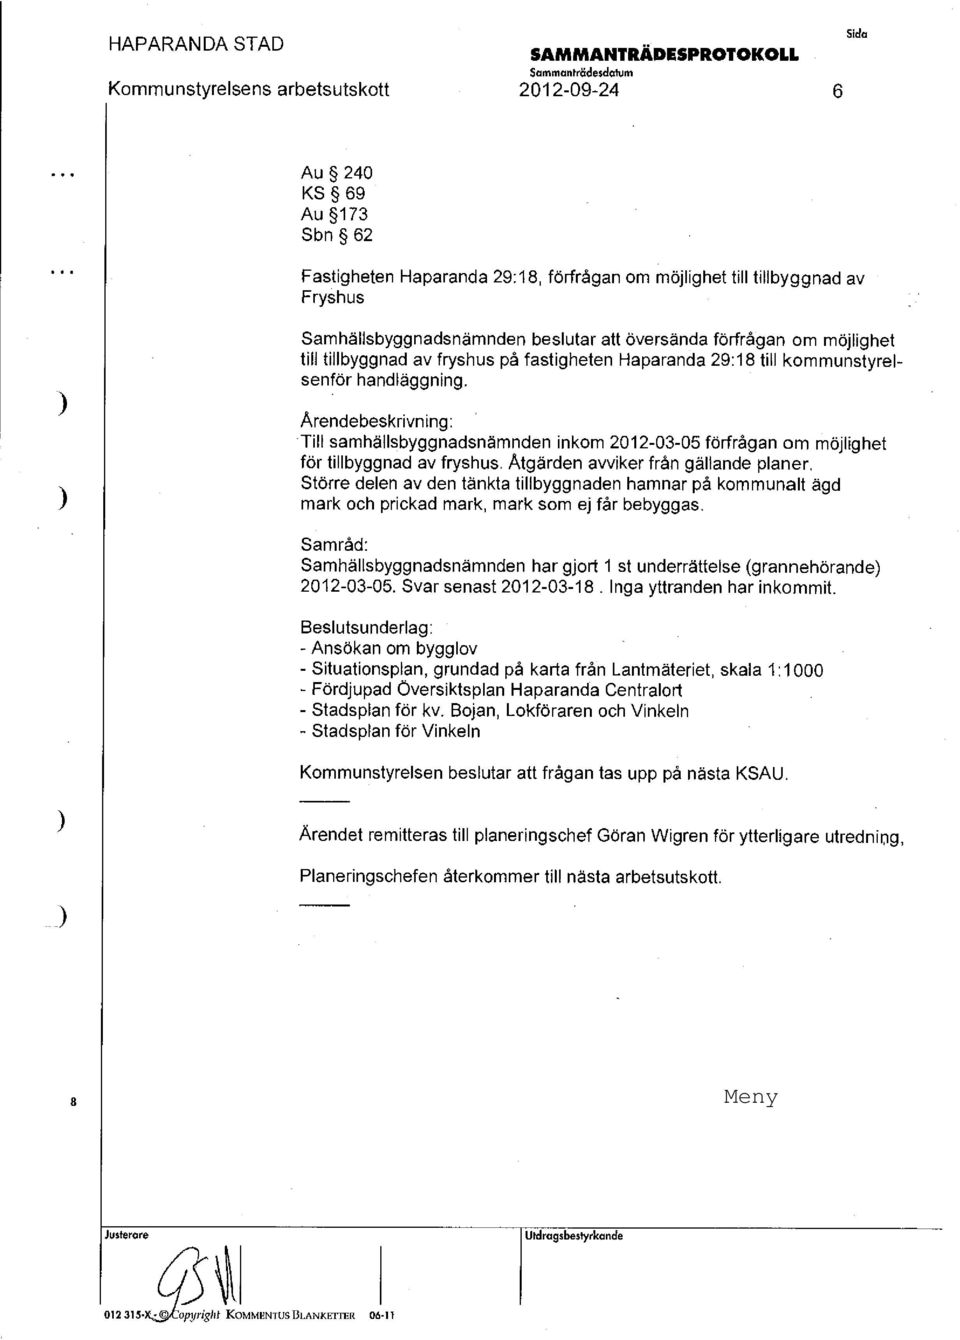 Ärendebeskrivning: -Till samhällsbyggnadsnämnden inkom 2012-03-05 förfrågan om möjlighet för tillbyggnad av fryshus. Åtgärden avviker från gällande planer.